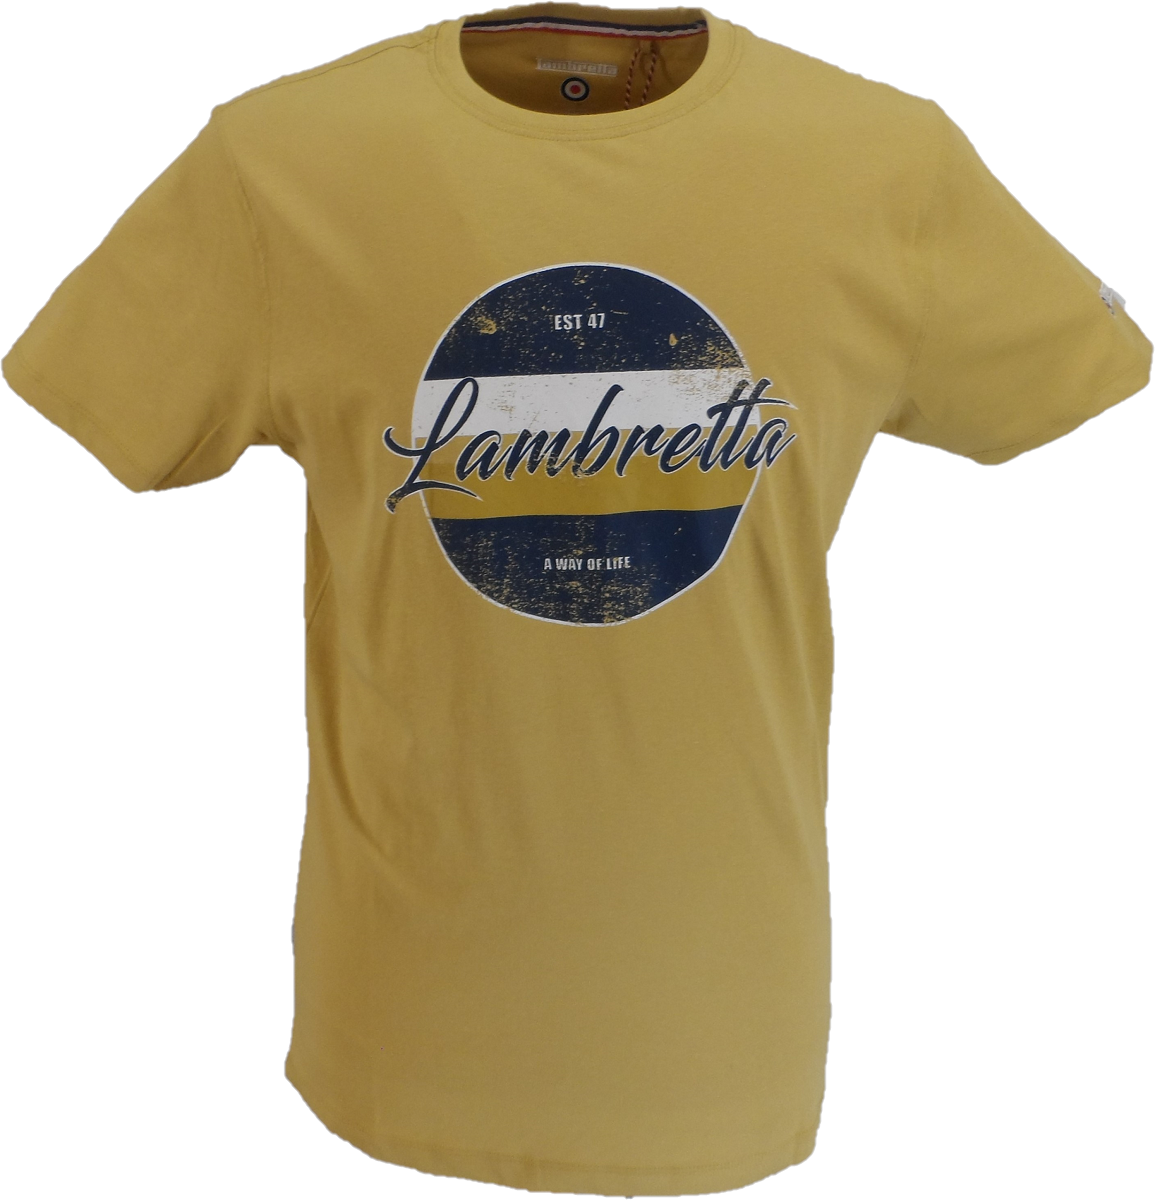 Camiseta con estampado retro vintage marrón arena Lambretta